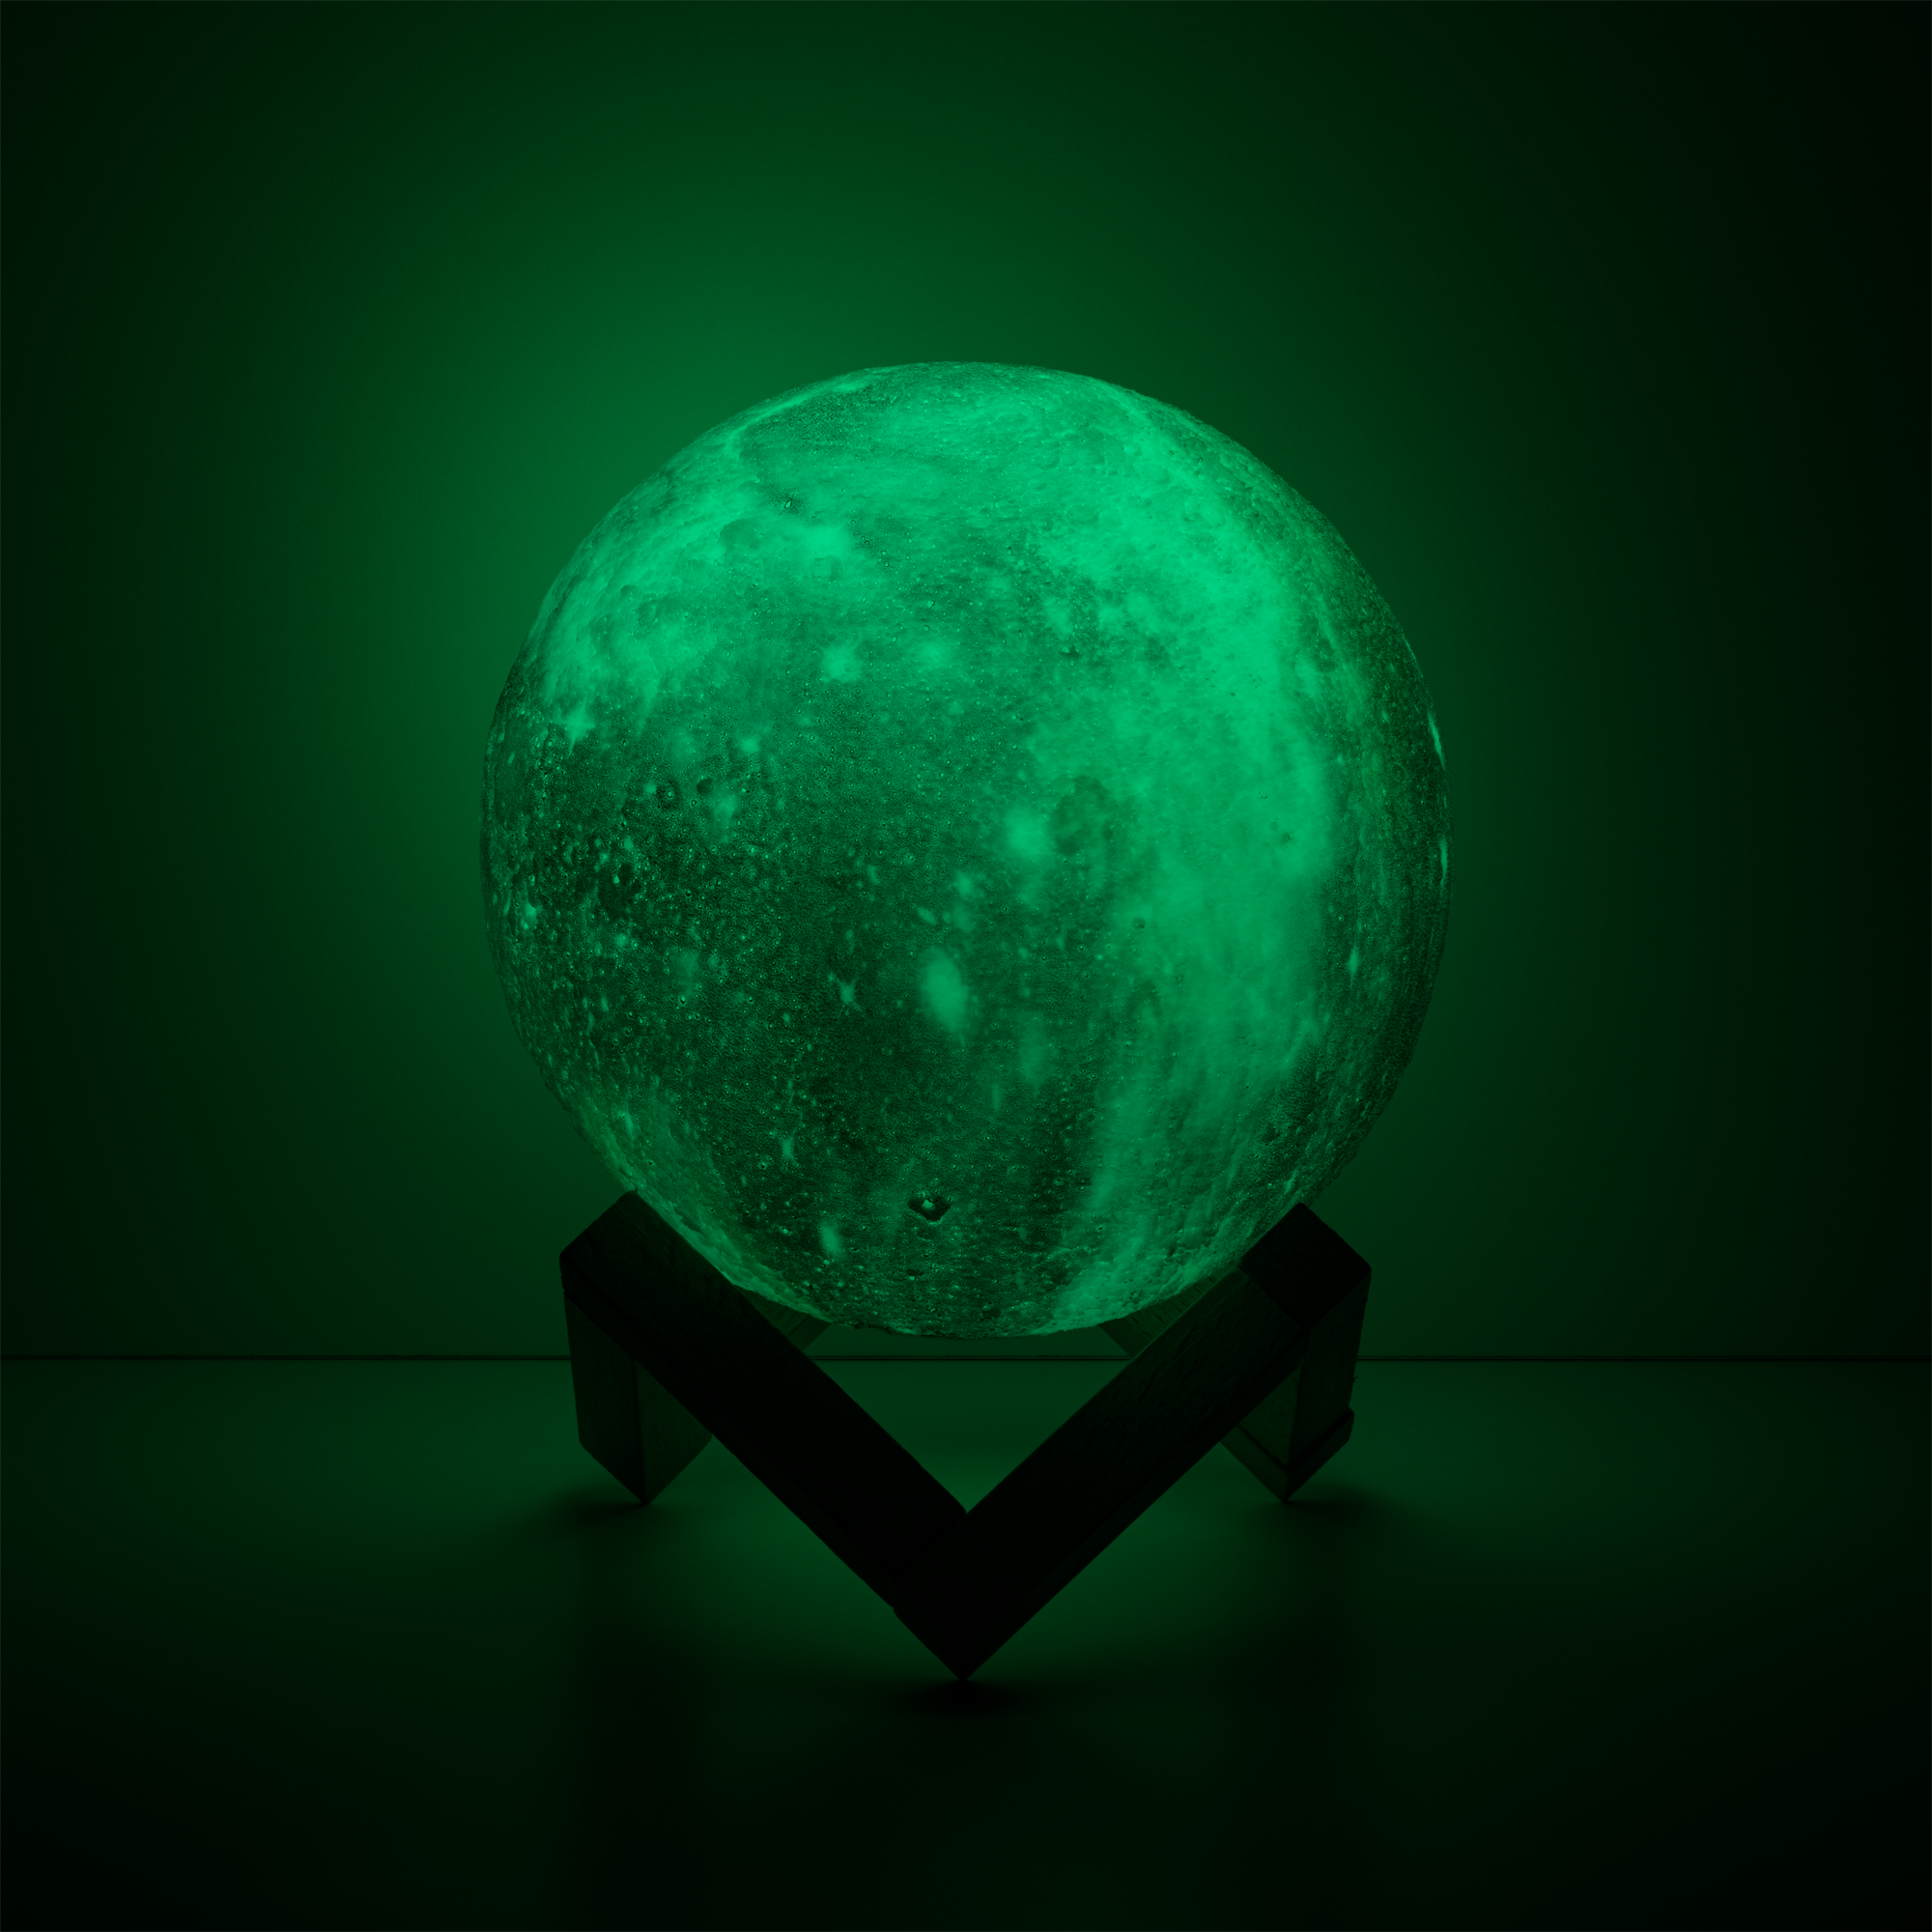 Gauss Светильник настольный NN003 3D Луна 1W RGB 5V Li-ion 450mA D15см цветной c пультом LED 1/6/12